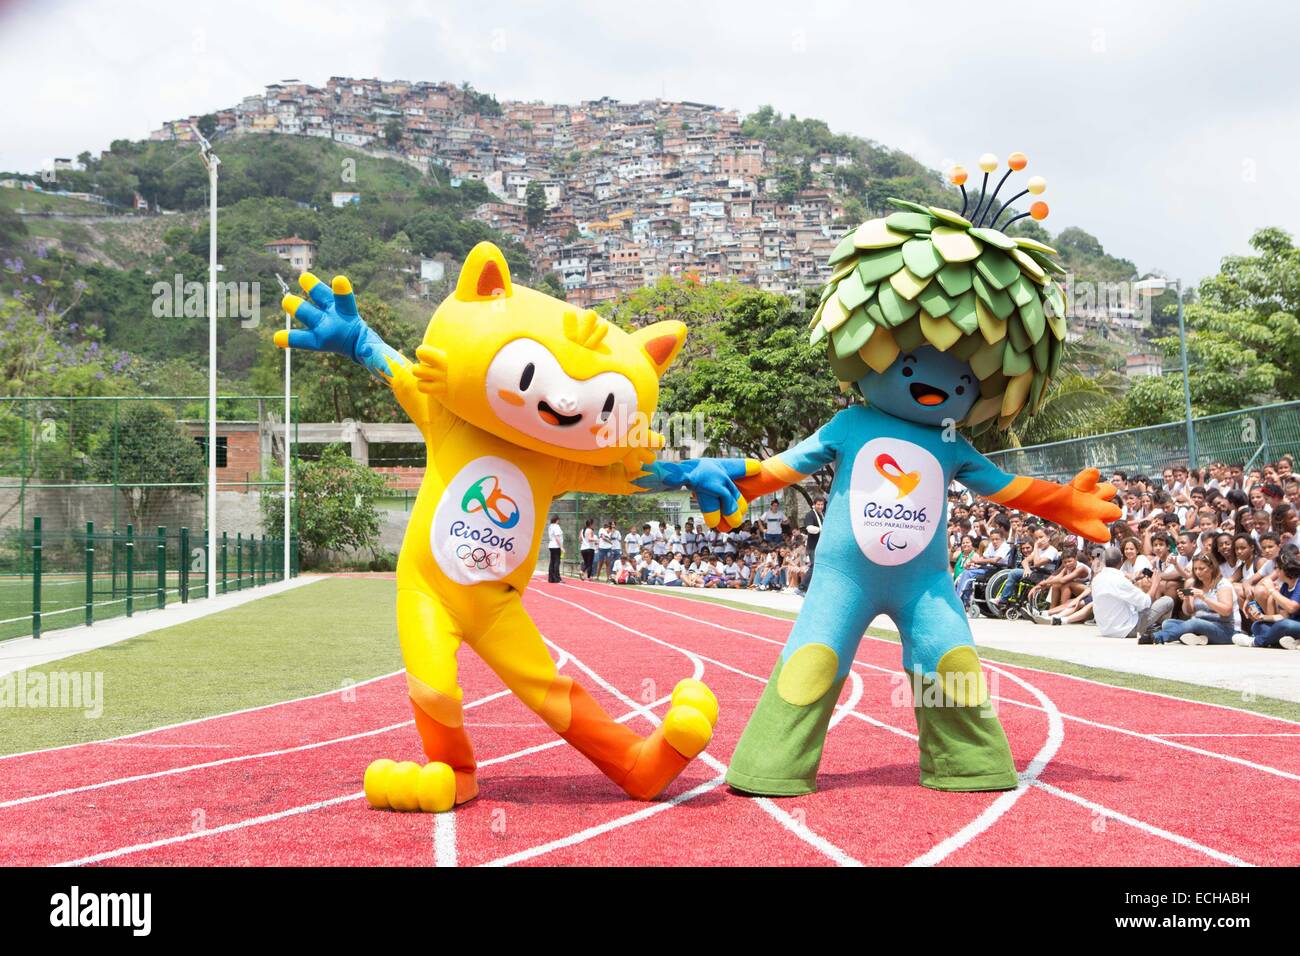 Rio de Janeiro. 14 Décembre, 2014. Une photo prise le 24 novembre 2014 montre la mascotte des Jeux Olympiques de Rio 2016 Vinicius (L) et la mascotte des Jeux Paralympiques de 2016 Tom à Rio de Janeiro, au Brésil. Annoncé le 14 décembre 2014, la mascotte pour les Jeux Olympiques de 2016 à Rio de Janeiro a été nommé Vinicius, et la mascotte des Jeux paralympiques vont par le nom de Tom. Les noms honneur musiciens brésiliens et partenaires Vinicius de Moraes et Tom Jobim. © Xu Zijian/Xinhua/Alamy Live News Banque D'Images